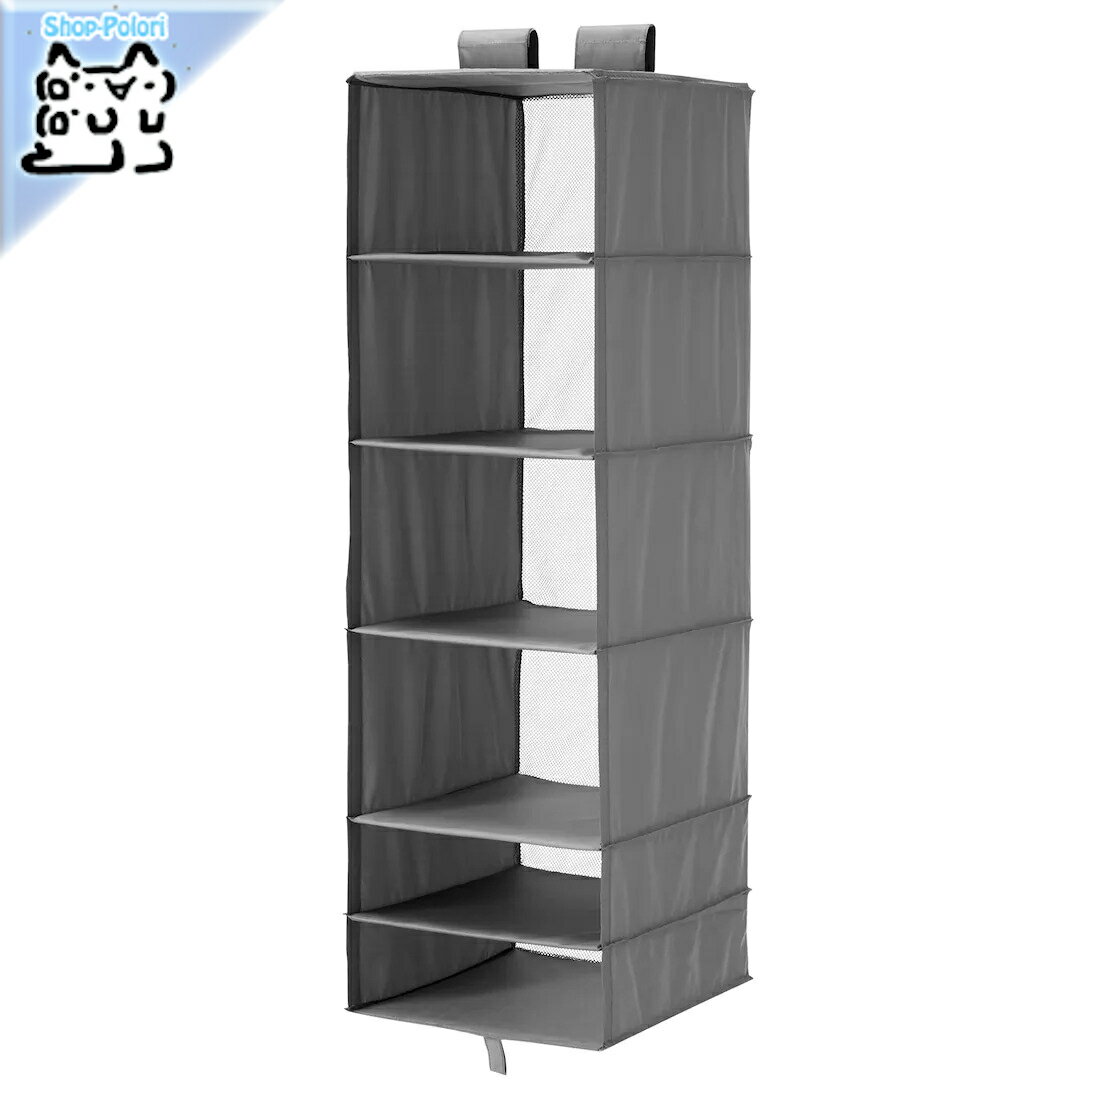 【IKEA -イケア-】SKUBB -スクッブ- 収納ケース 収納 6コンパートメント ダークグレー 35x45x125 cm (004.729.95)